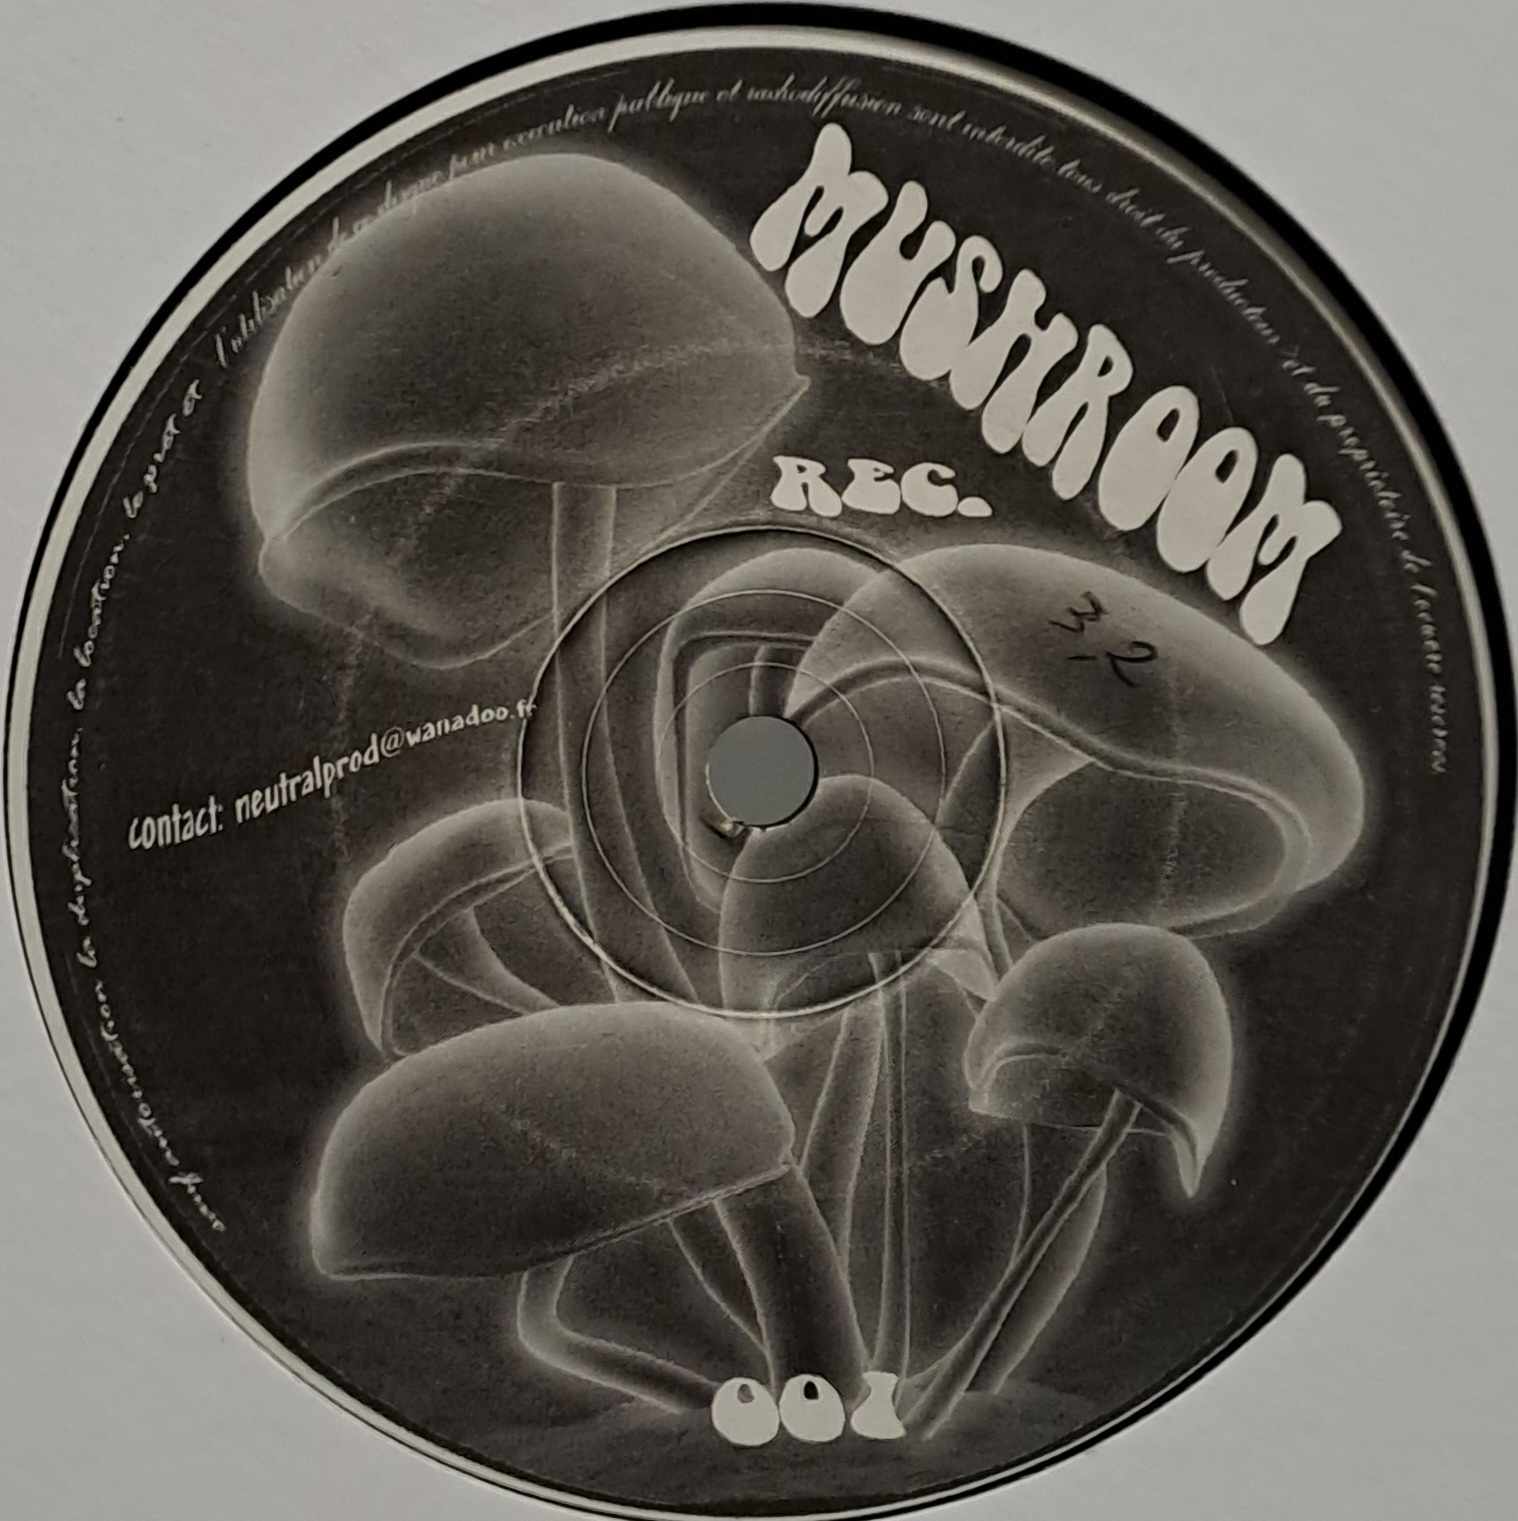 Mushroom 01 - vinyle freetekno